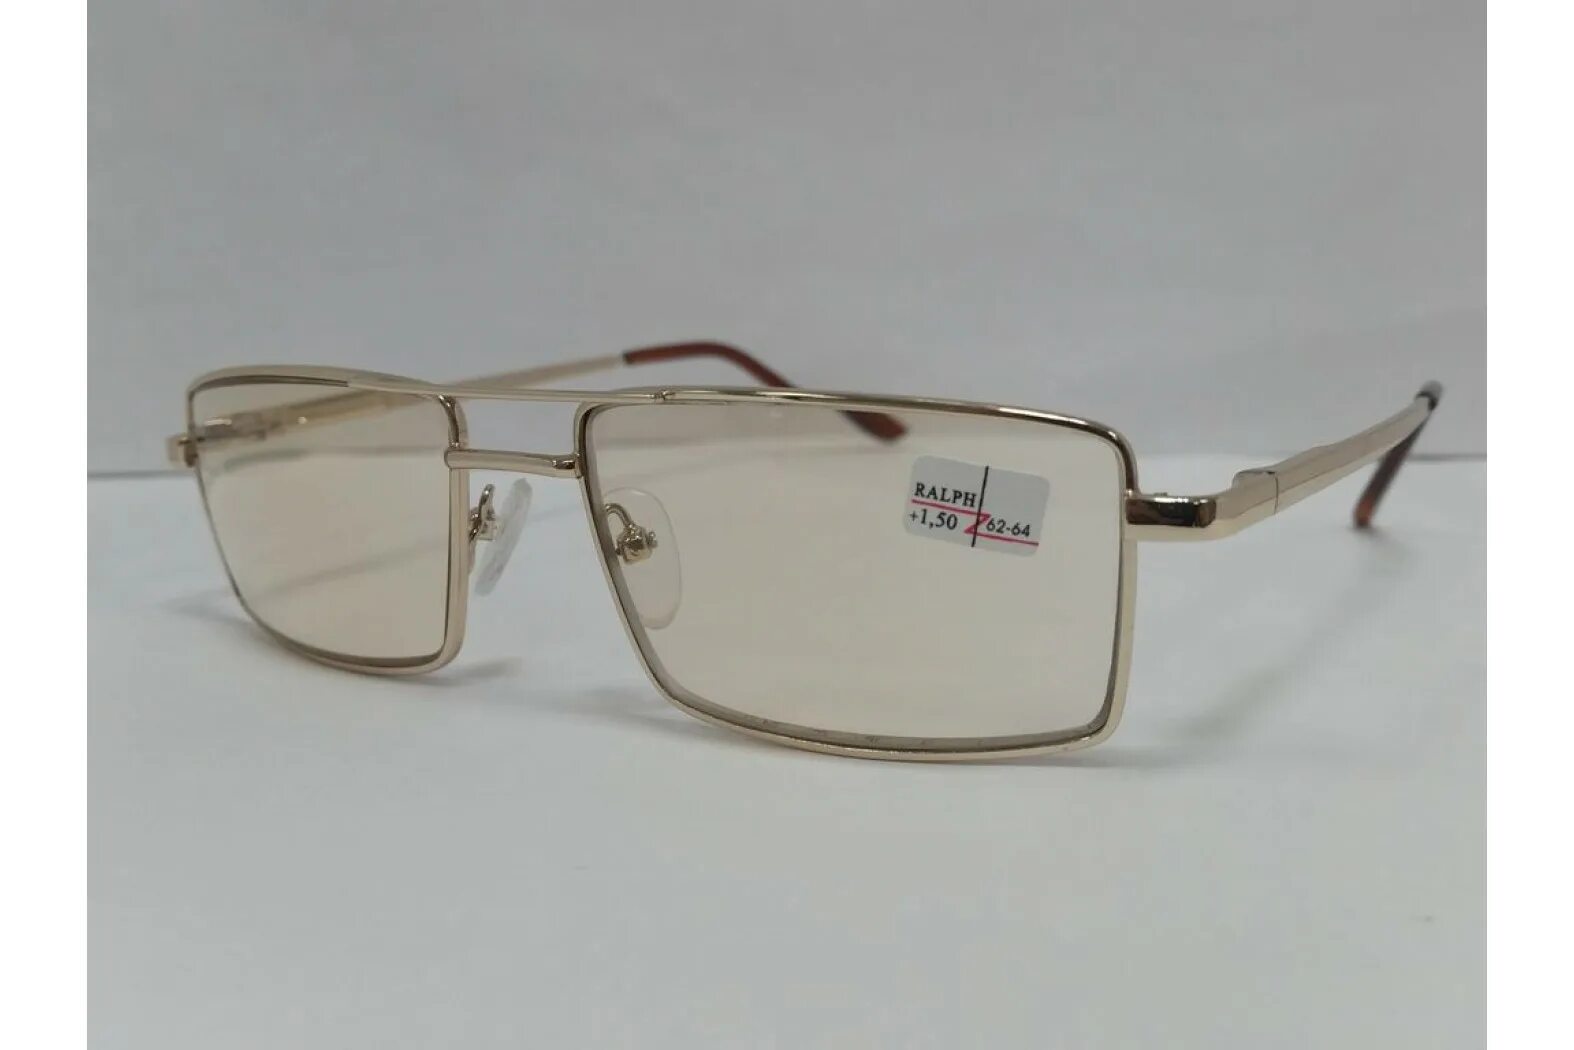 Очки Ральф для зрения тонированные. Очки хамелеоны фотохромные очки. Zen очки хамелеон 1900 h. Очки хамельны стекло 62-64мм. Хамелеон очки москва